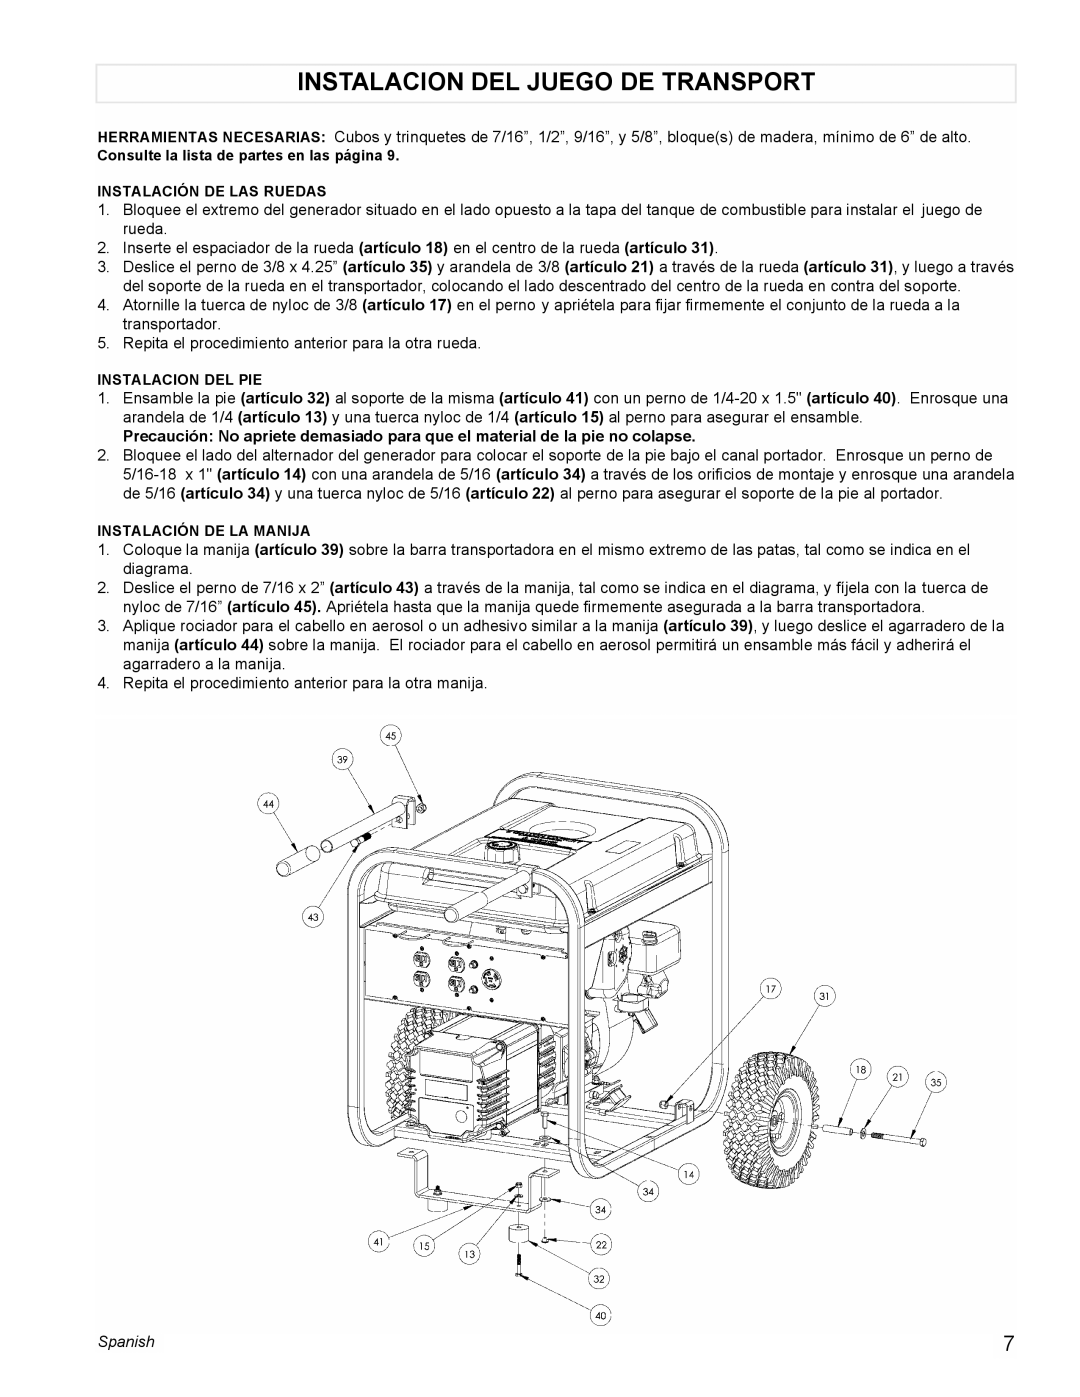 Powermate PMA525500 manual Instalacion Del Juego De Transport, Spanish 